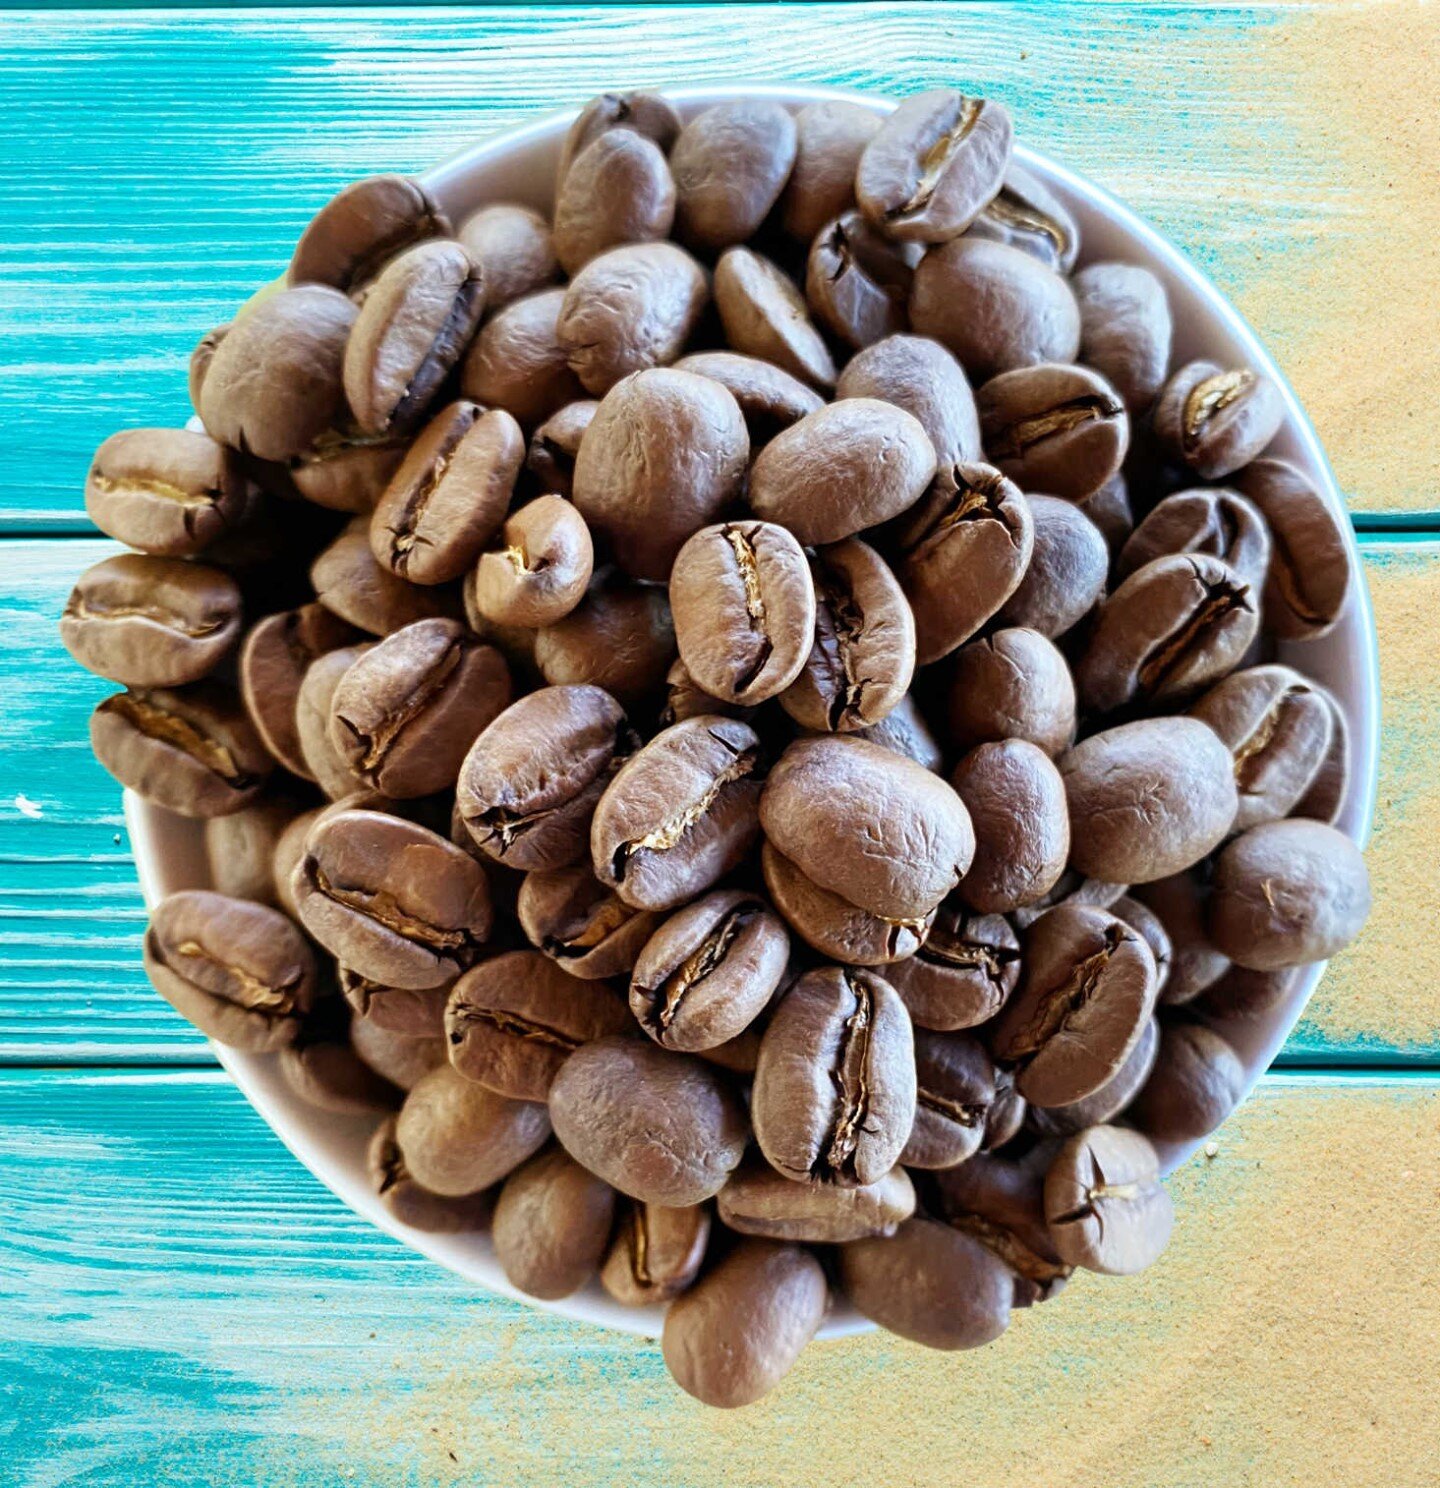 Farmer Focused, Premium Hawaiian Specialty Coffee. Small batch roasted in Kona, Hawaii⁠
⁠
✈️📦☕️KonaRoasted.com